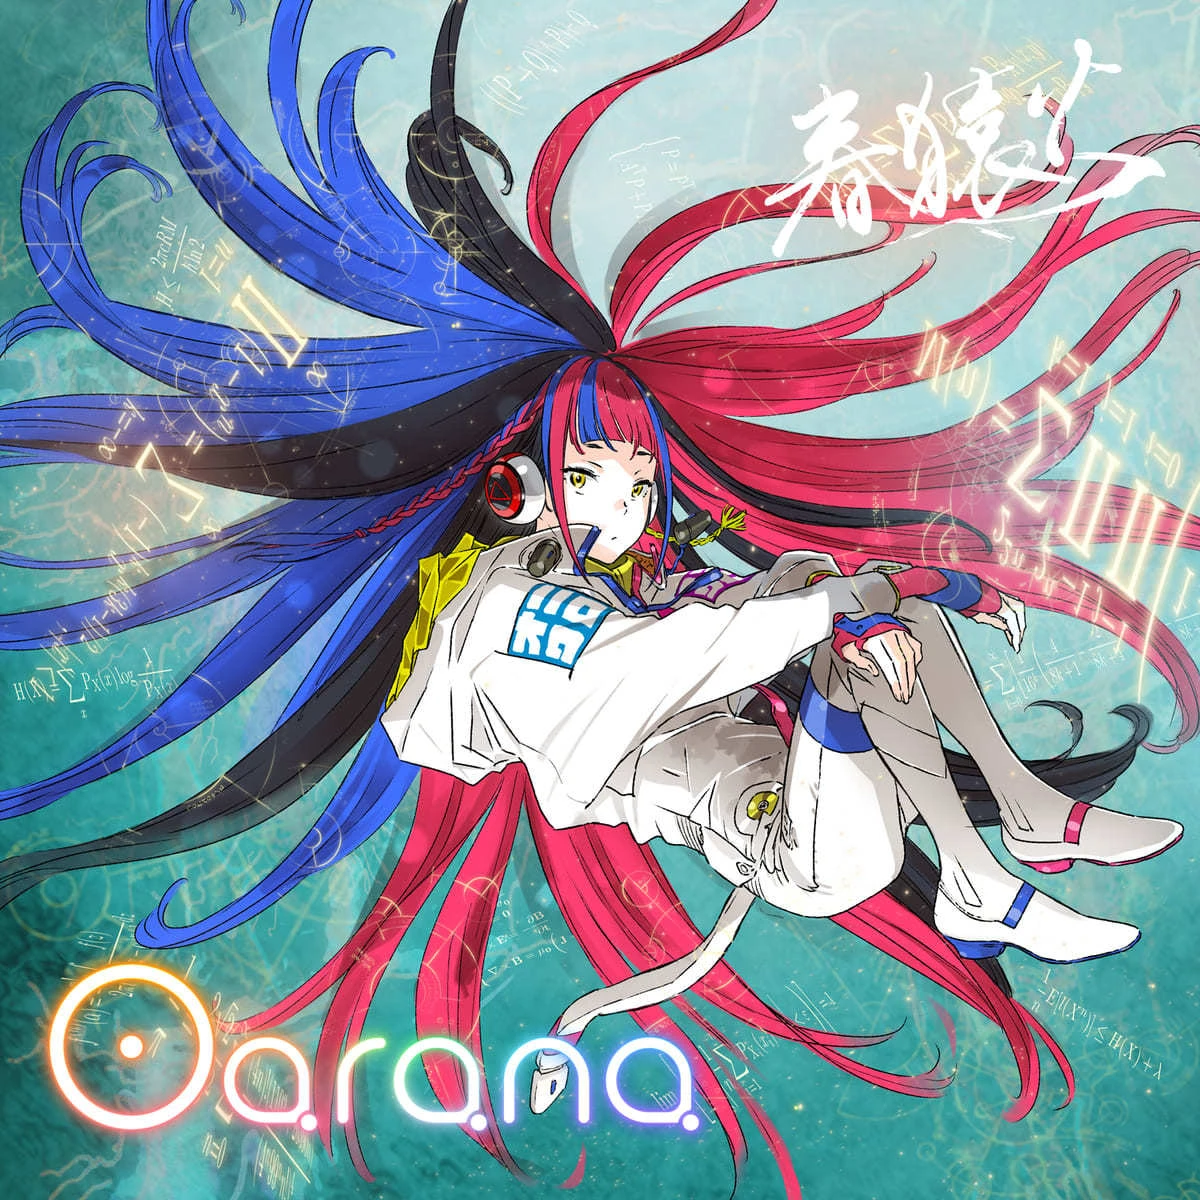 キャラデザ・吉田健一さんと磯光雄監督によって描かれた「Oarana」のジャケット